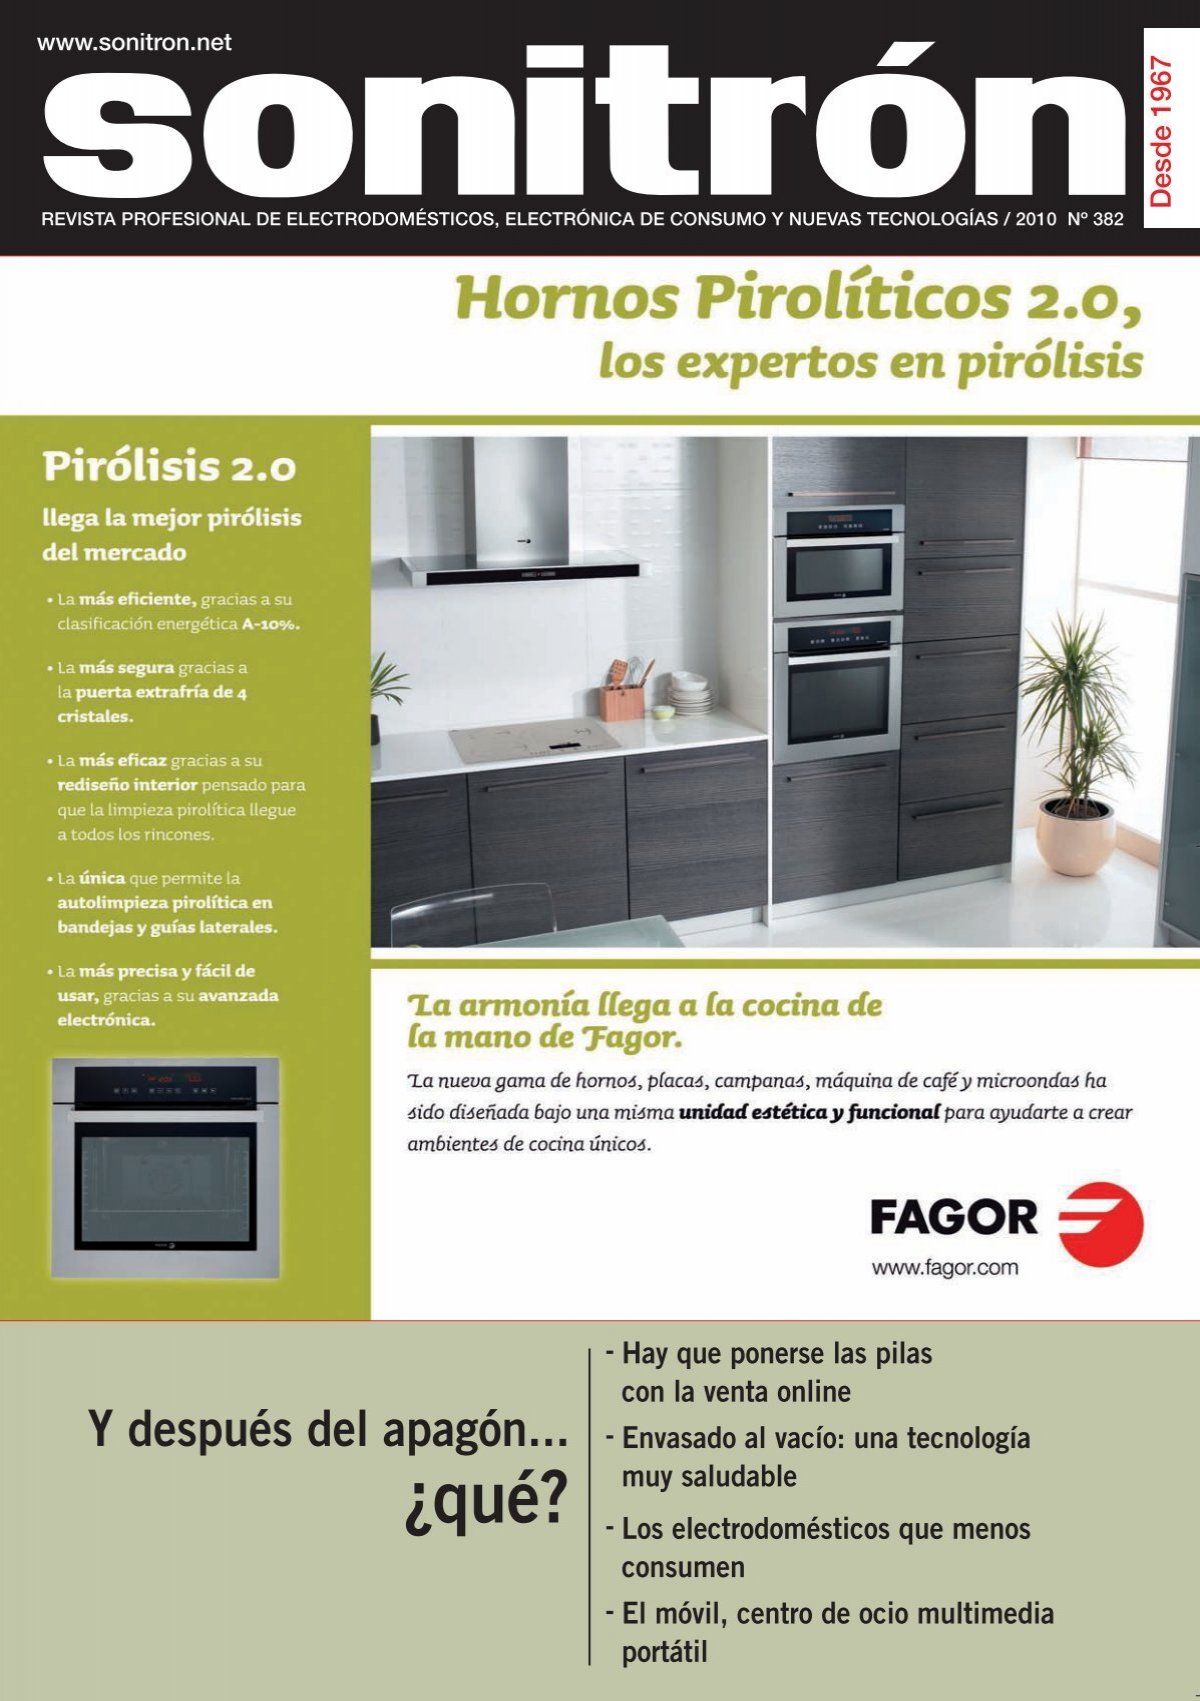 Placas de cocina portátiles · Jata · Electrodomésticos · El Corte Inglés  (11)